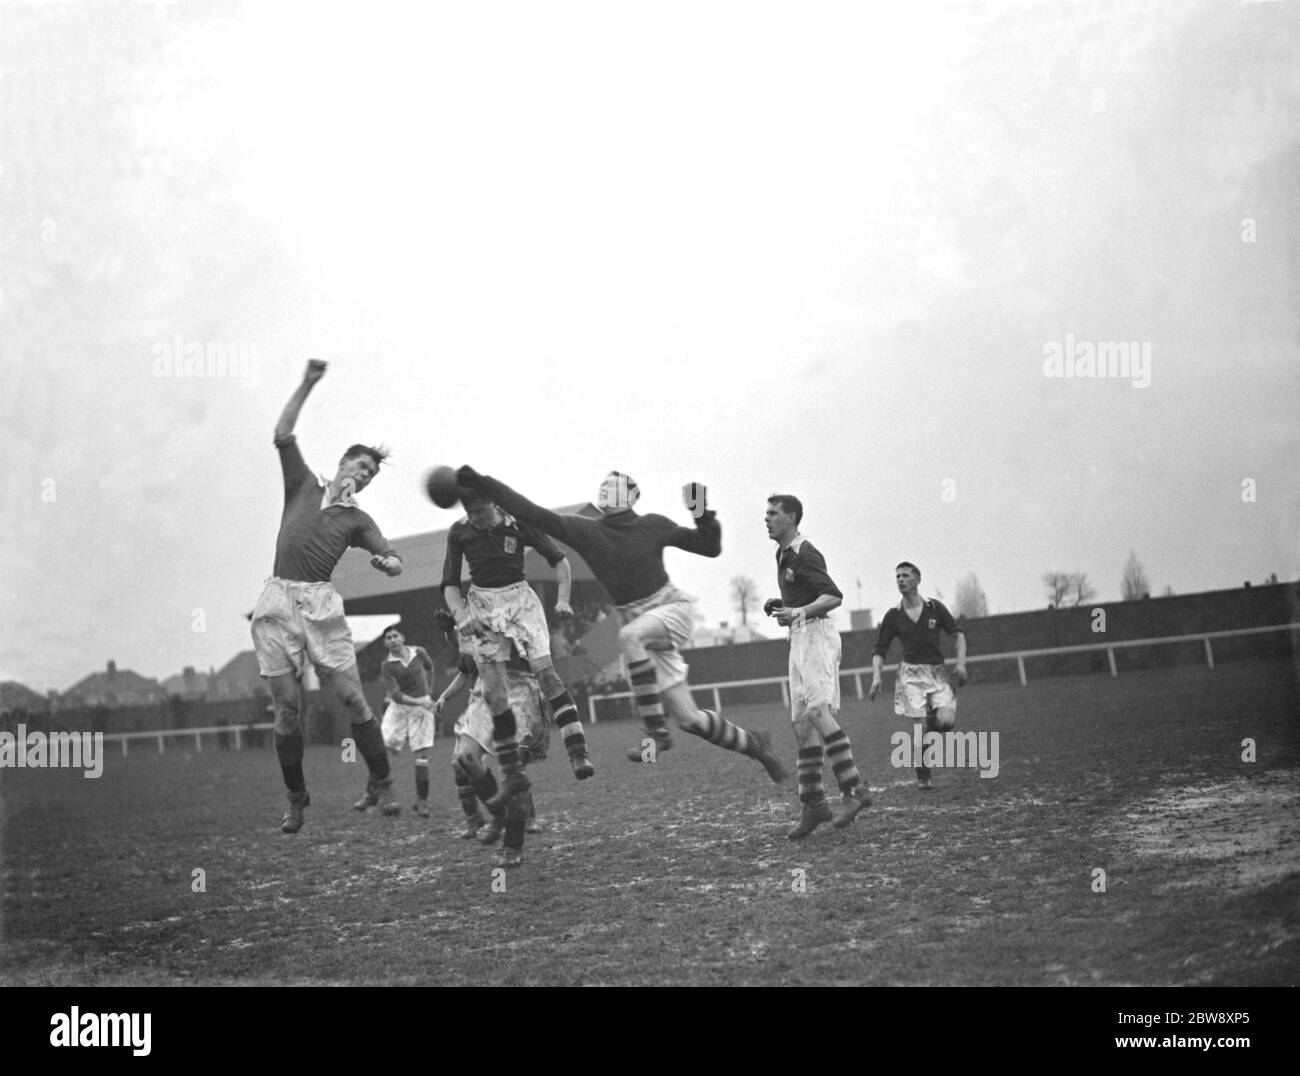 London Paper Mills contre Northfleet United - Kent League - 25/02/39 Goalkeeper emporte le ballon. 1938 Banque D'Images